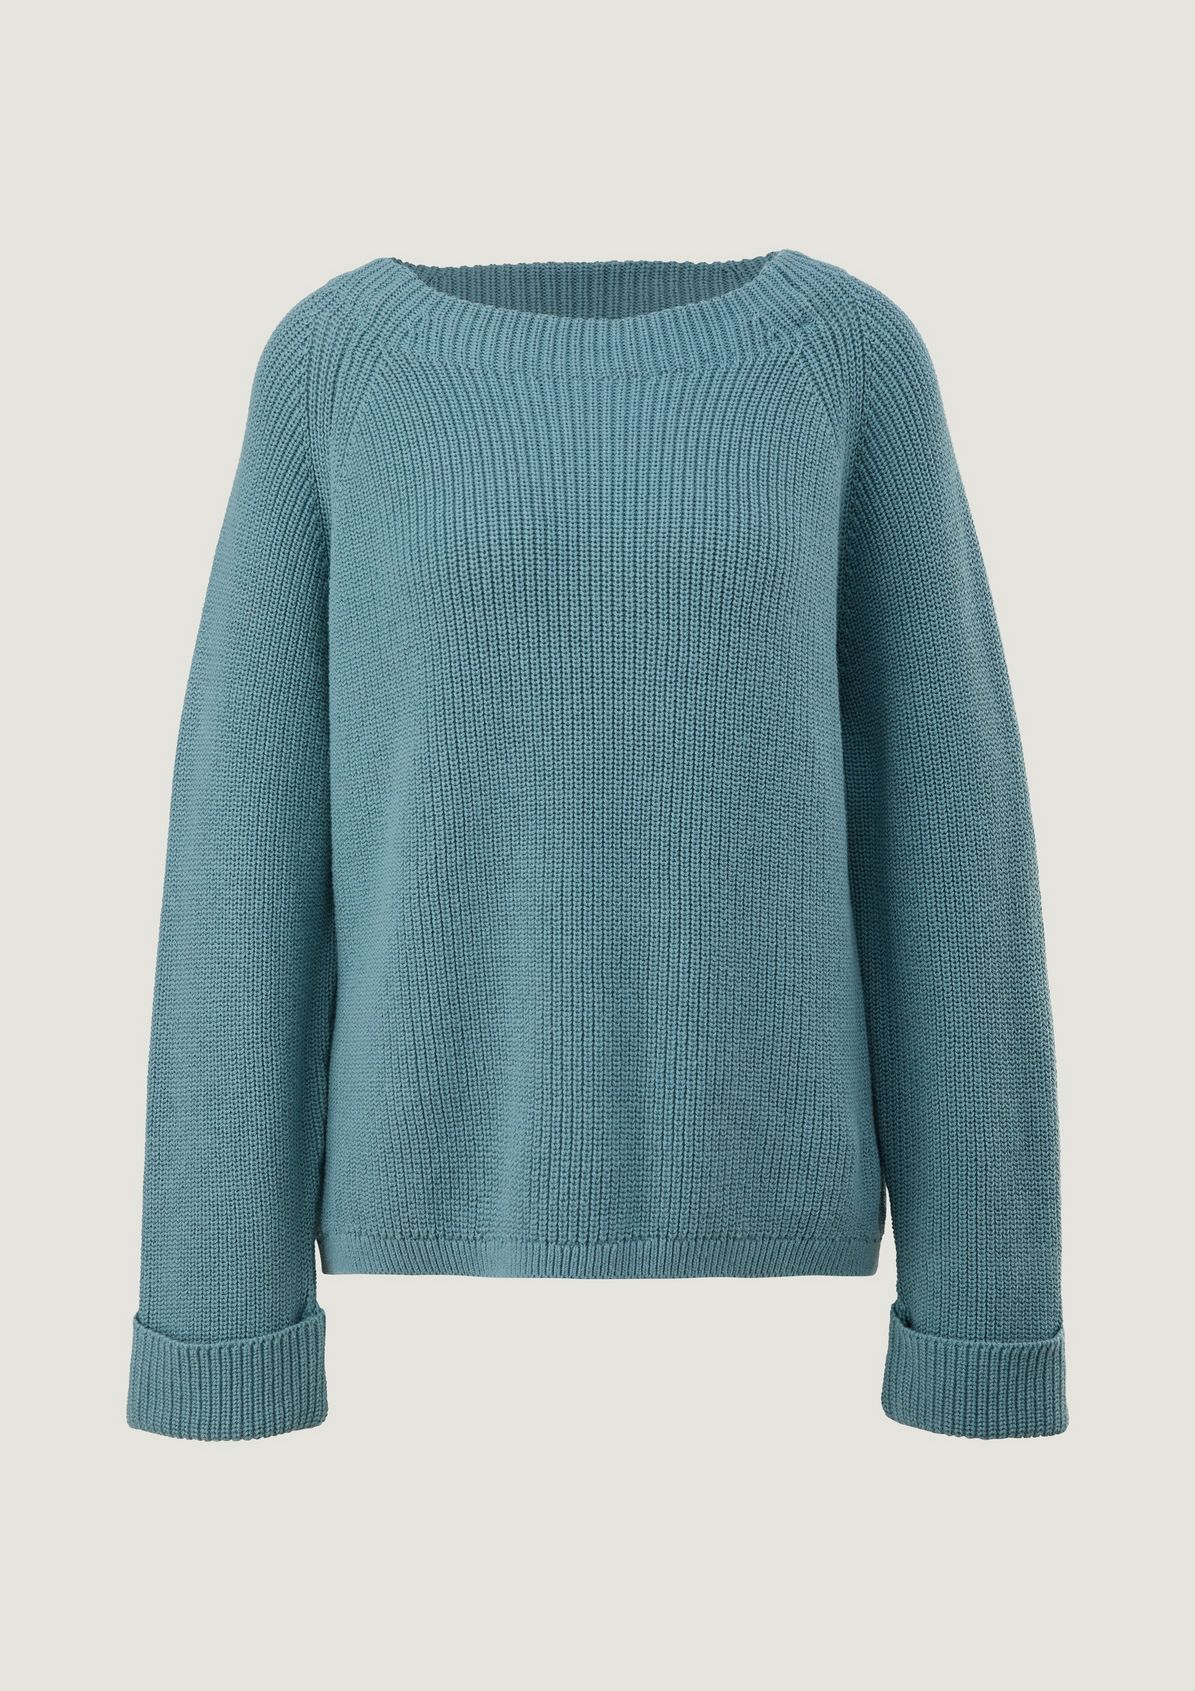 Rib knit jumper from comma